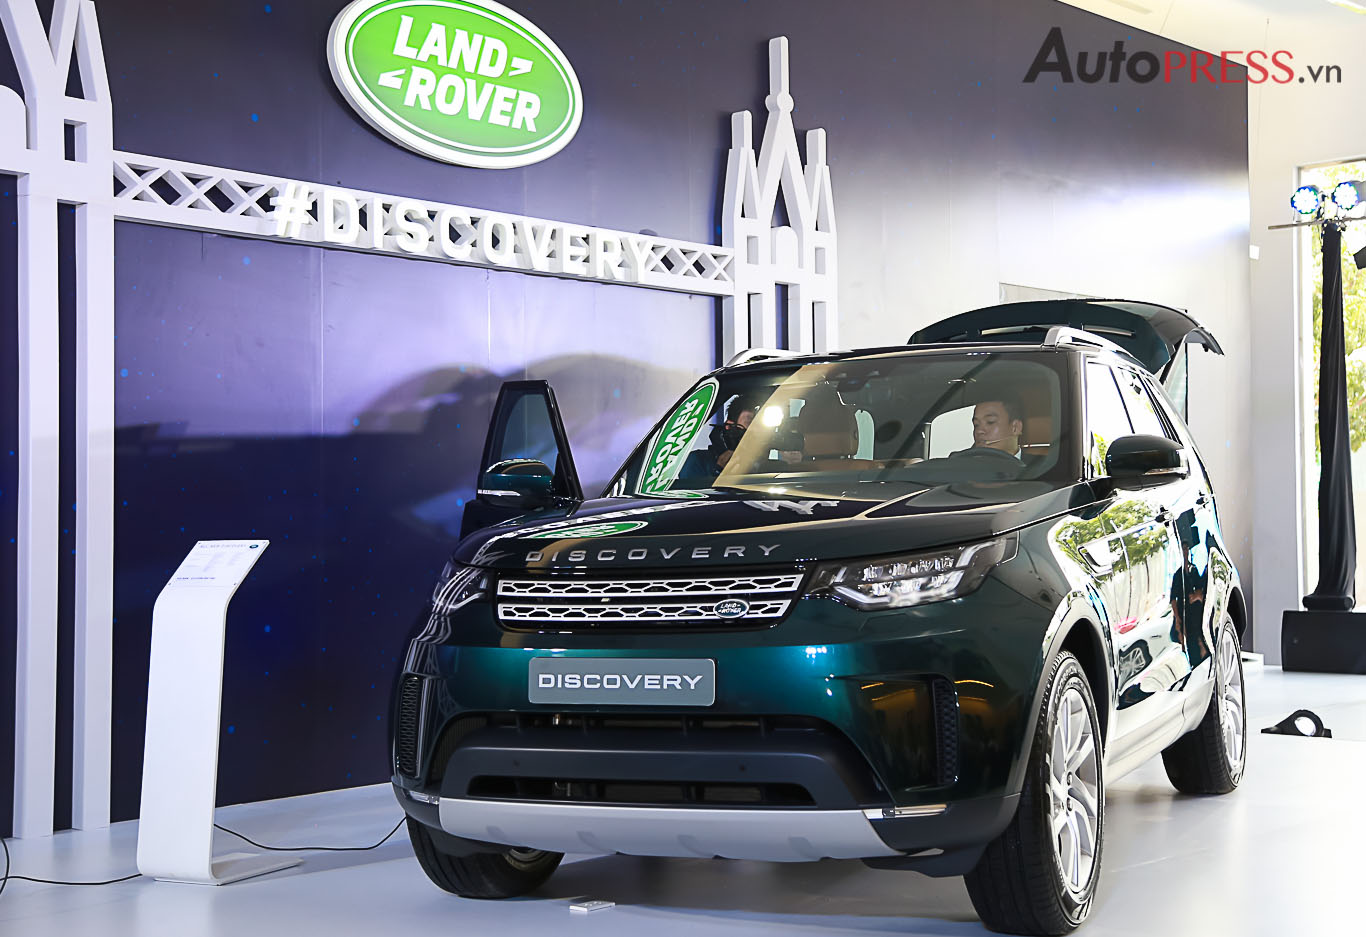 Land Rover Discovery 202 Giá lăn bánh Hình ảnh  Trả góp